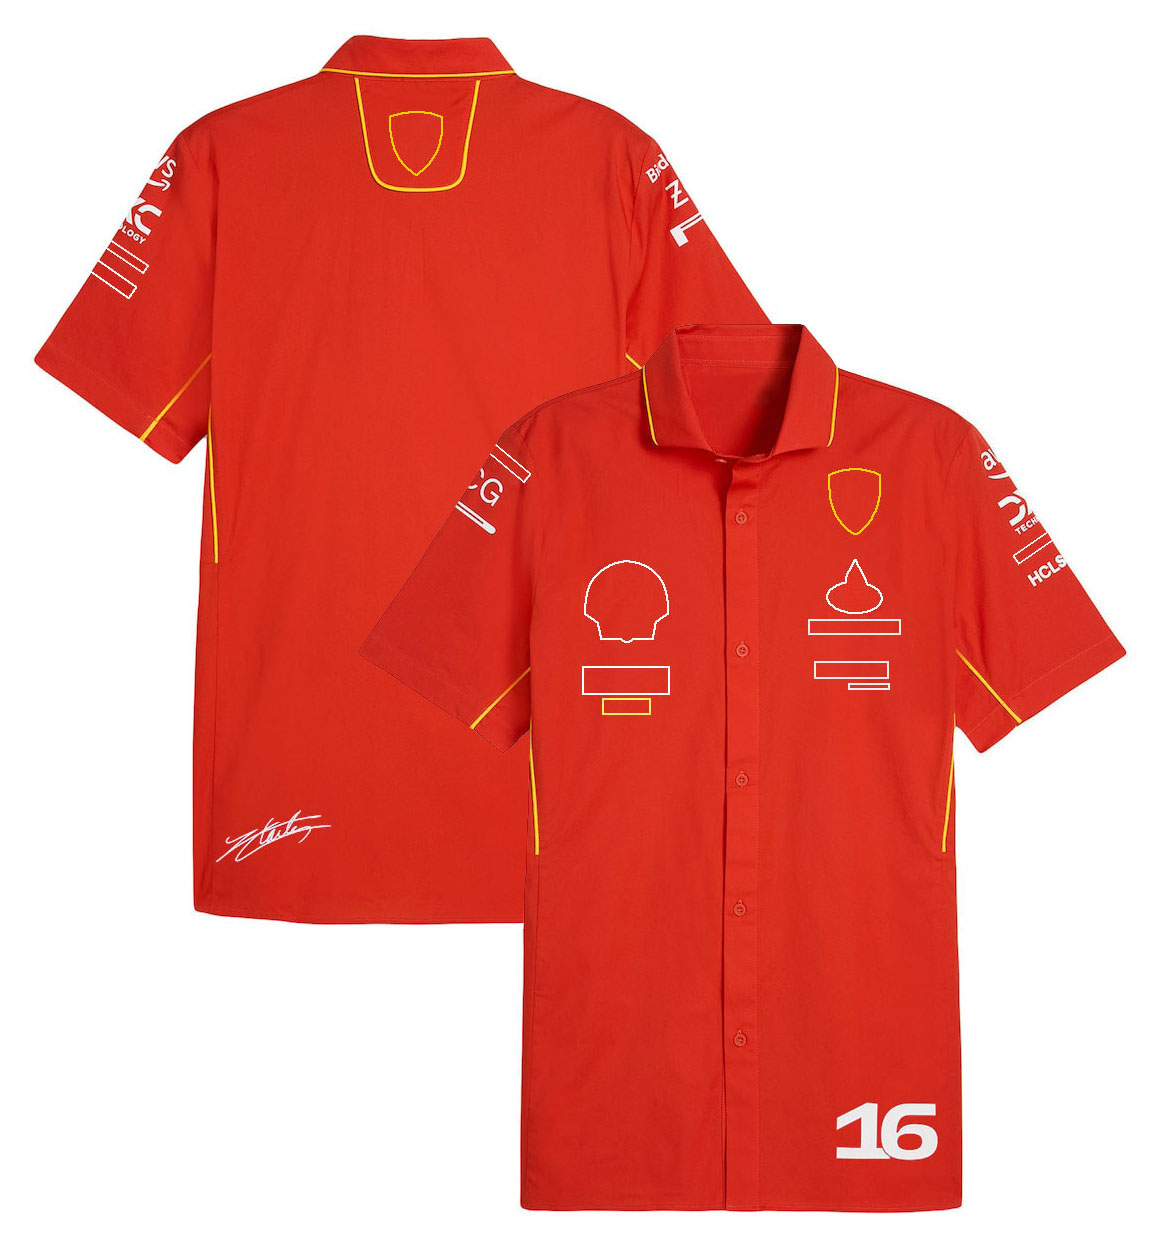 2023 2024 F1 남자를위한 셔츠 포뮬러 1 폴로 넥 셔츠 티셔츠 새로운 시즌 레이싱 팀 드라이버 캐주얼 레드 티셔츠 저지 플러스 사이즈